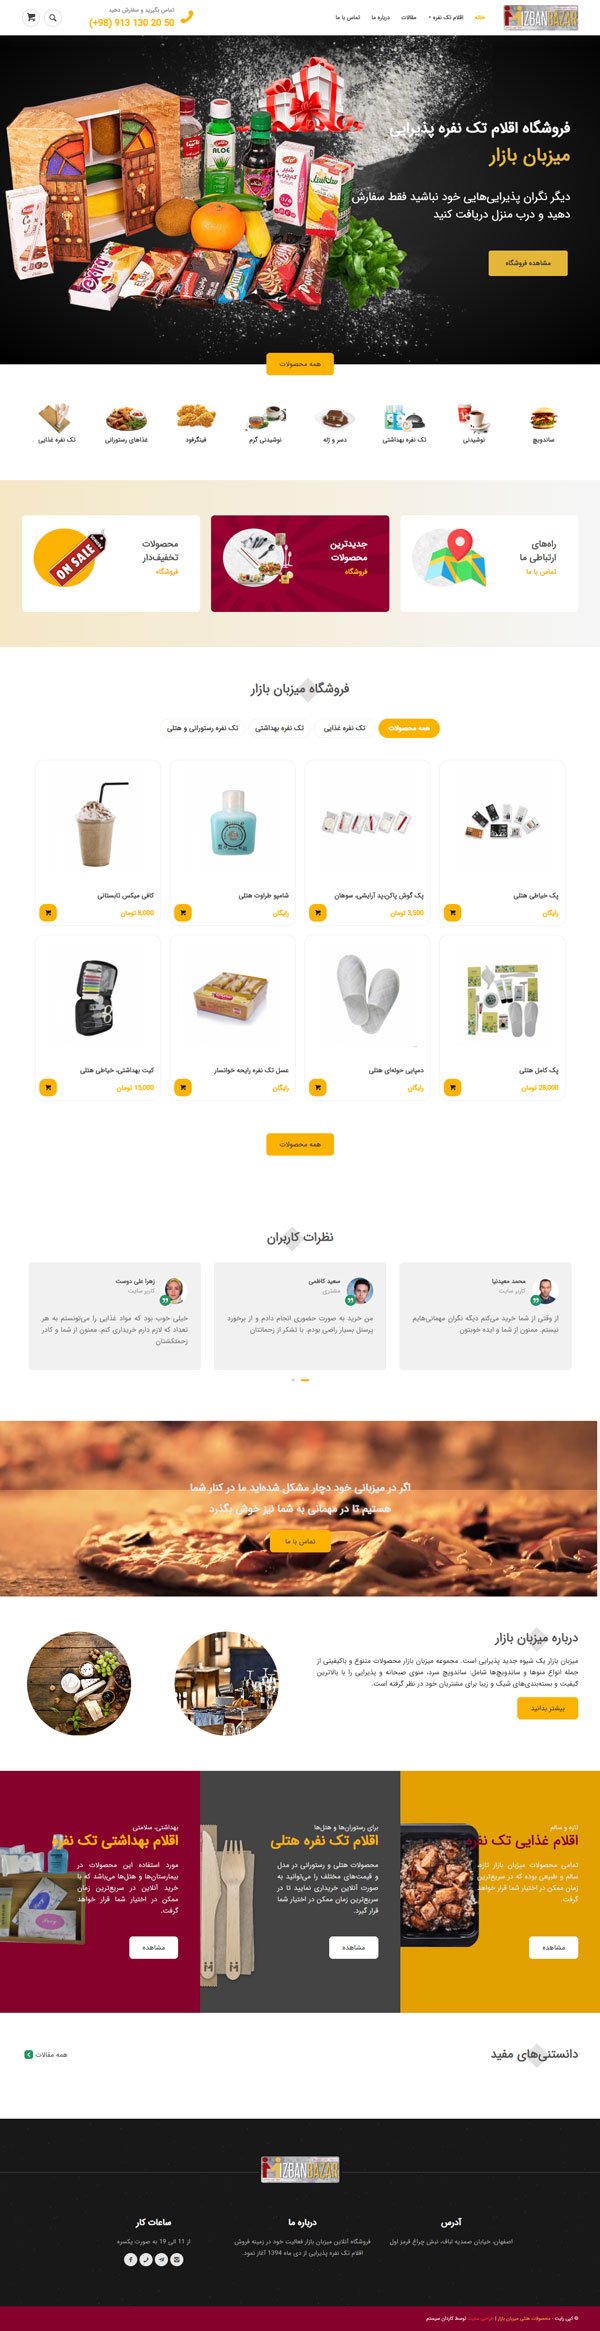 طراحی سایت میزبان بازار | فروشگاه آنلاین محصولات هتلی